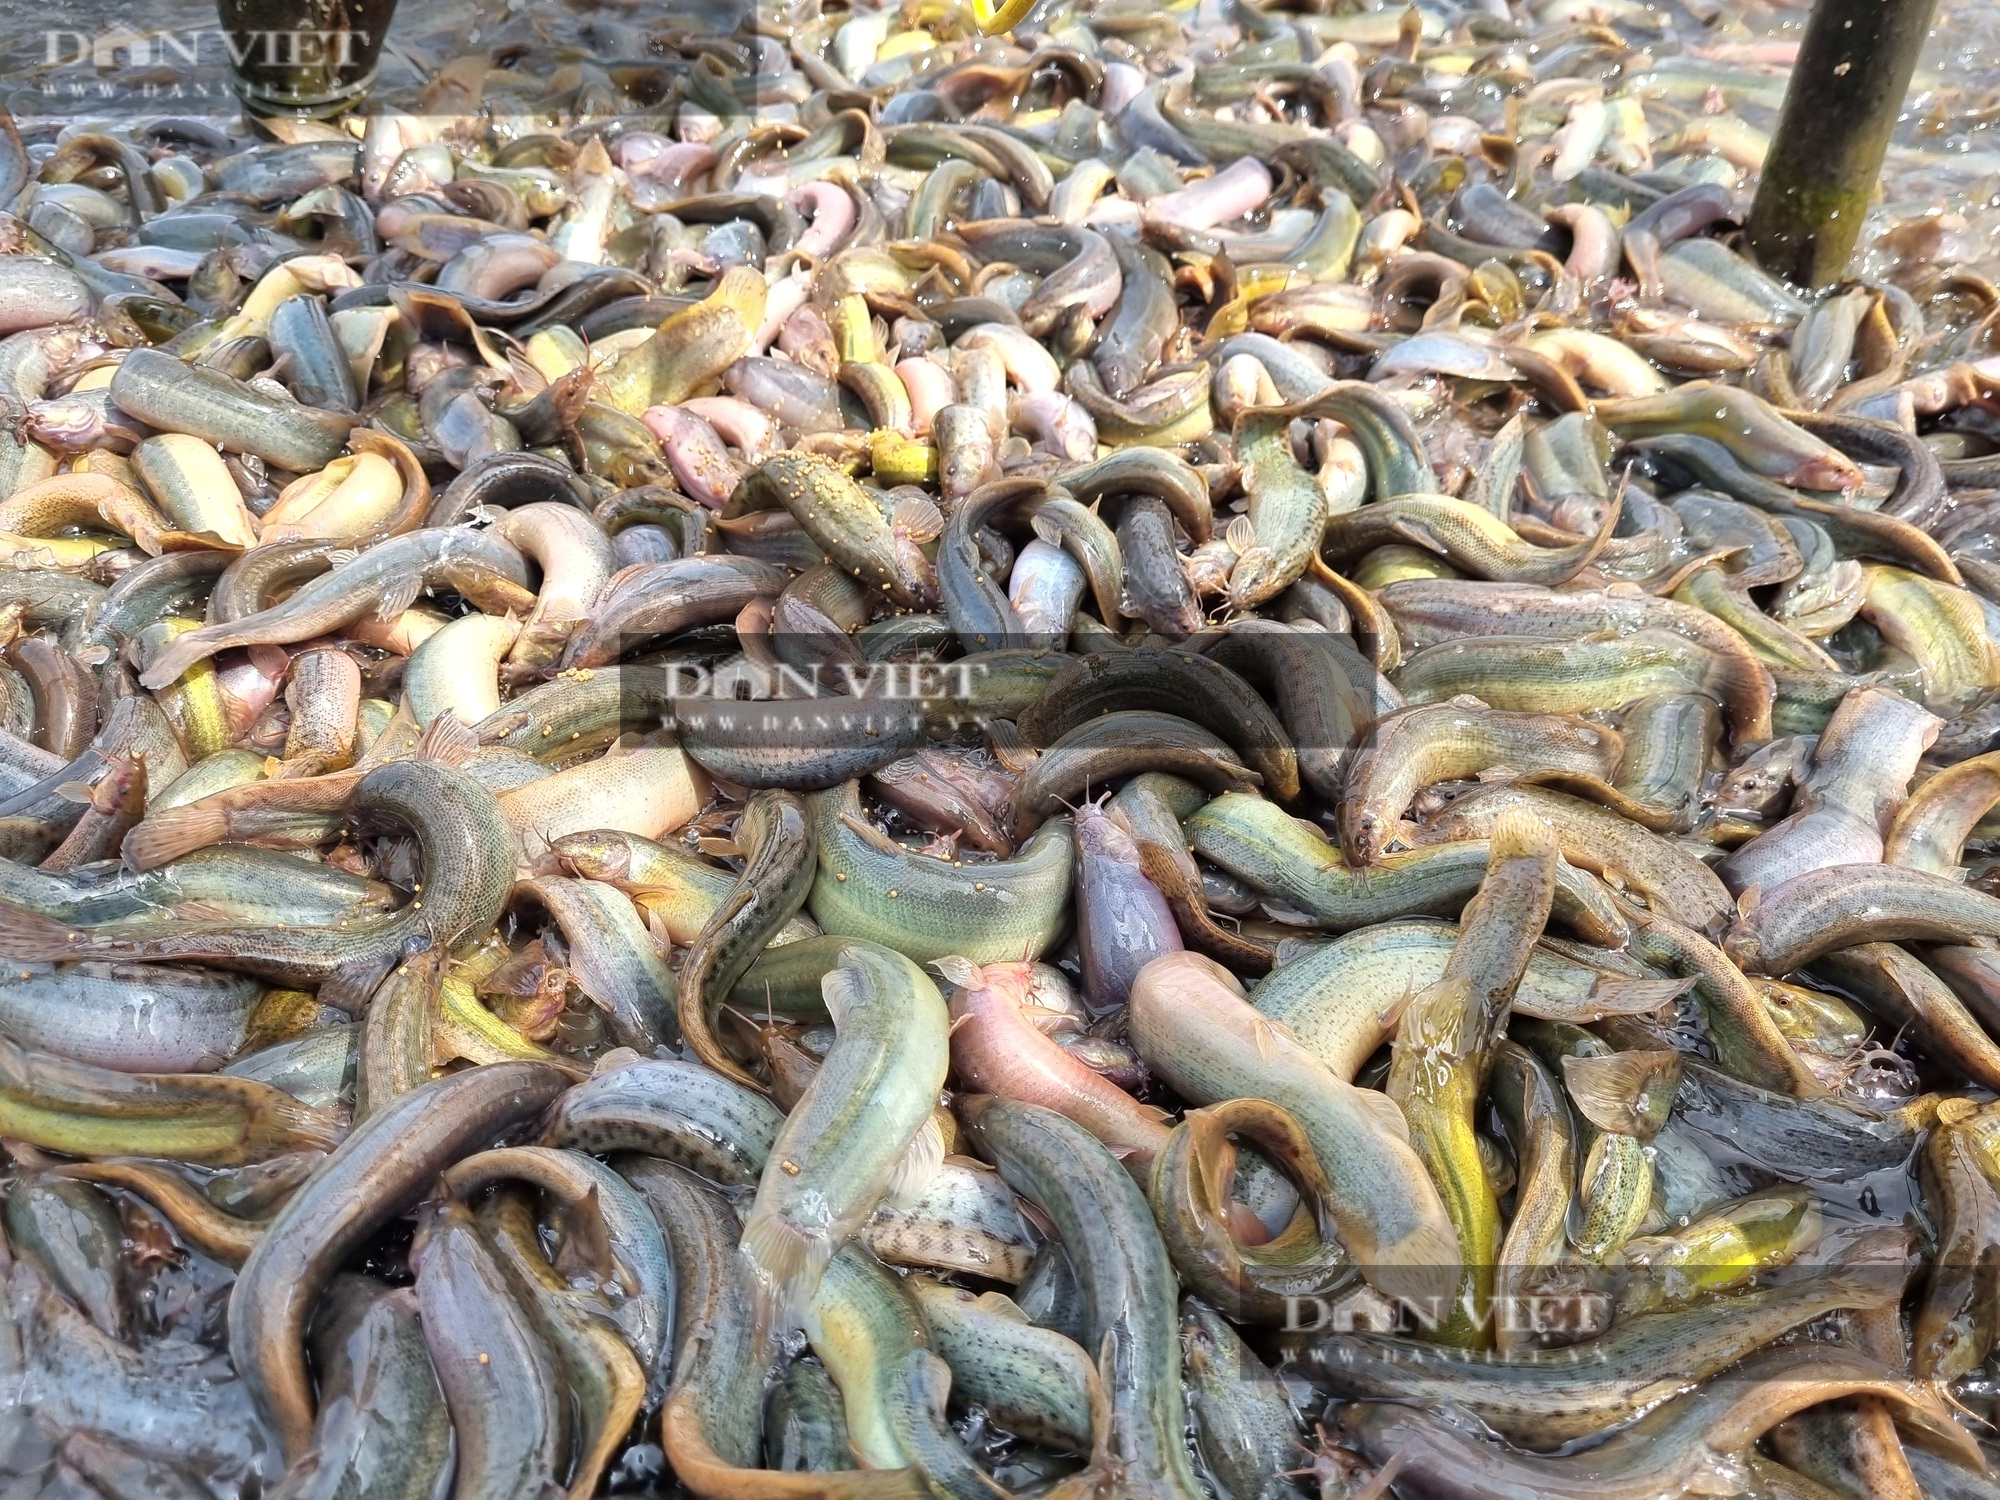 Nuôi cá chạch sụn, một nông dân ở Ninh Bình lãi 2 tỉ đồng - Ảnh 3.